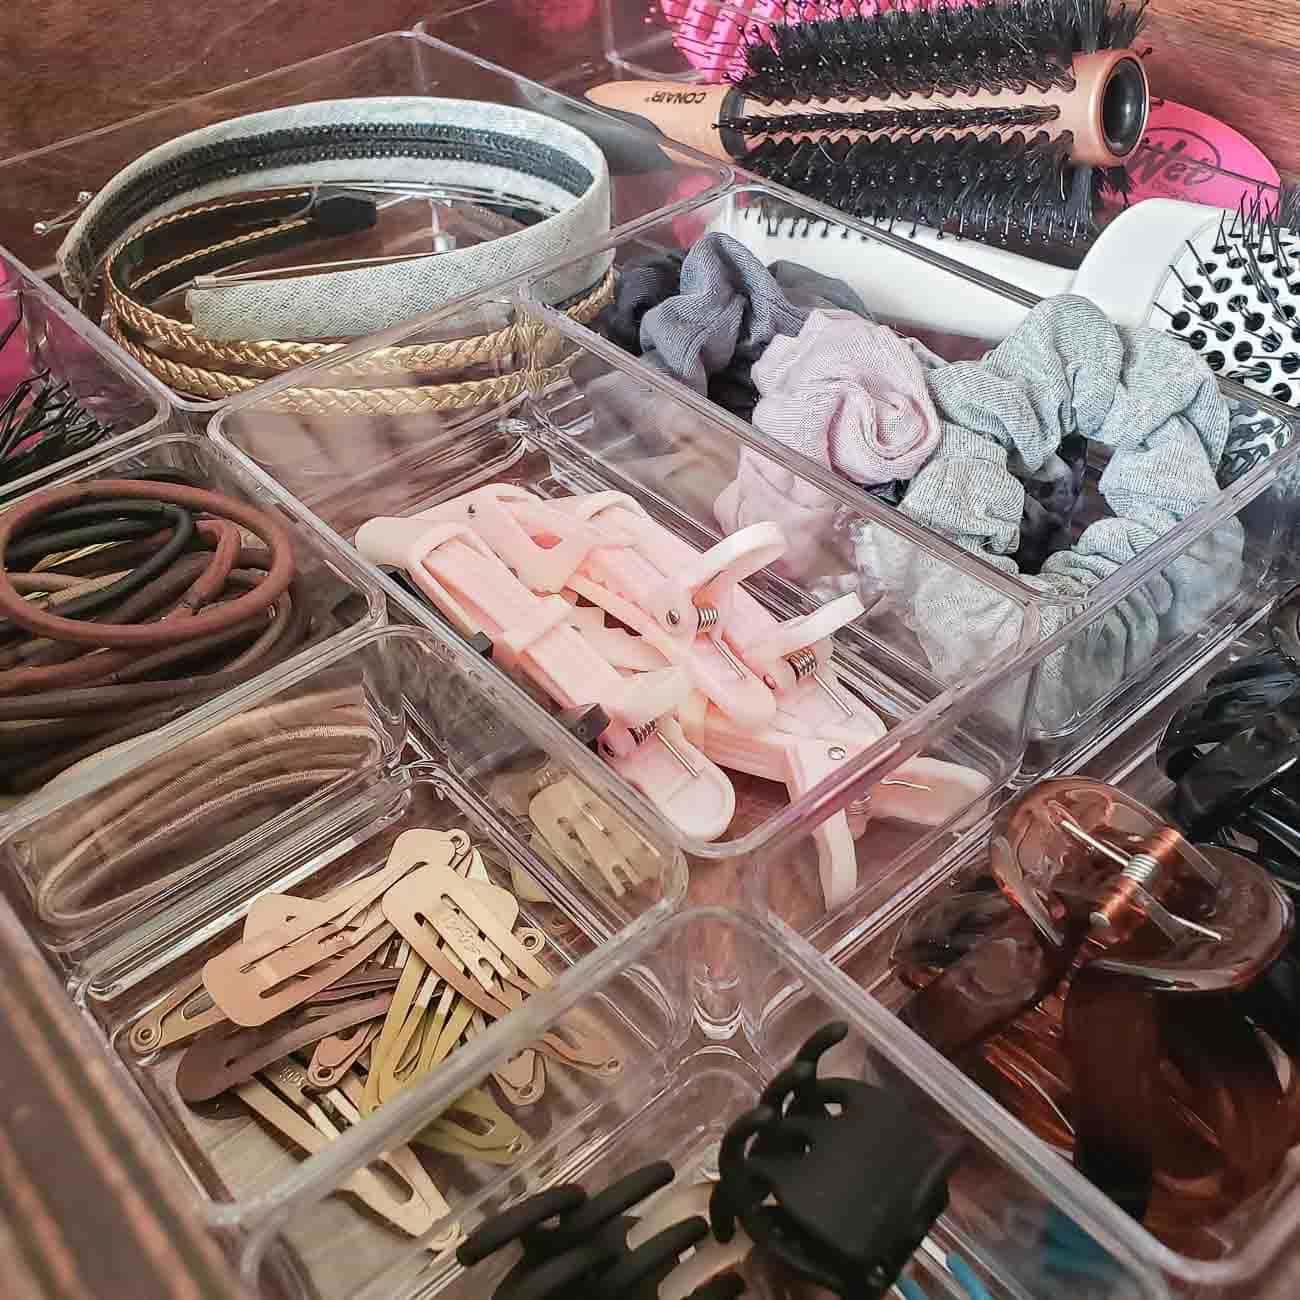 Organized hair accessories